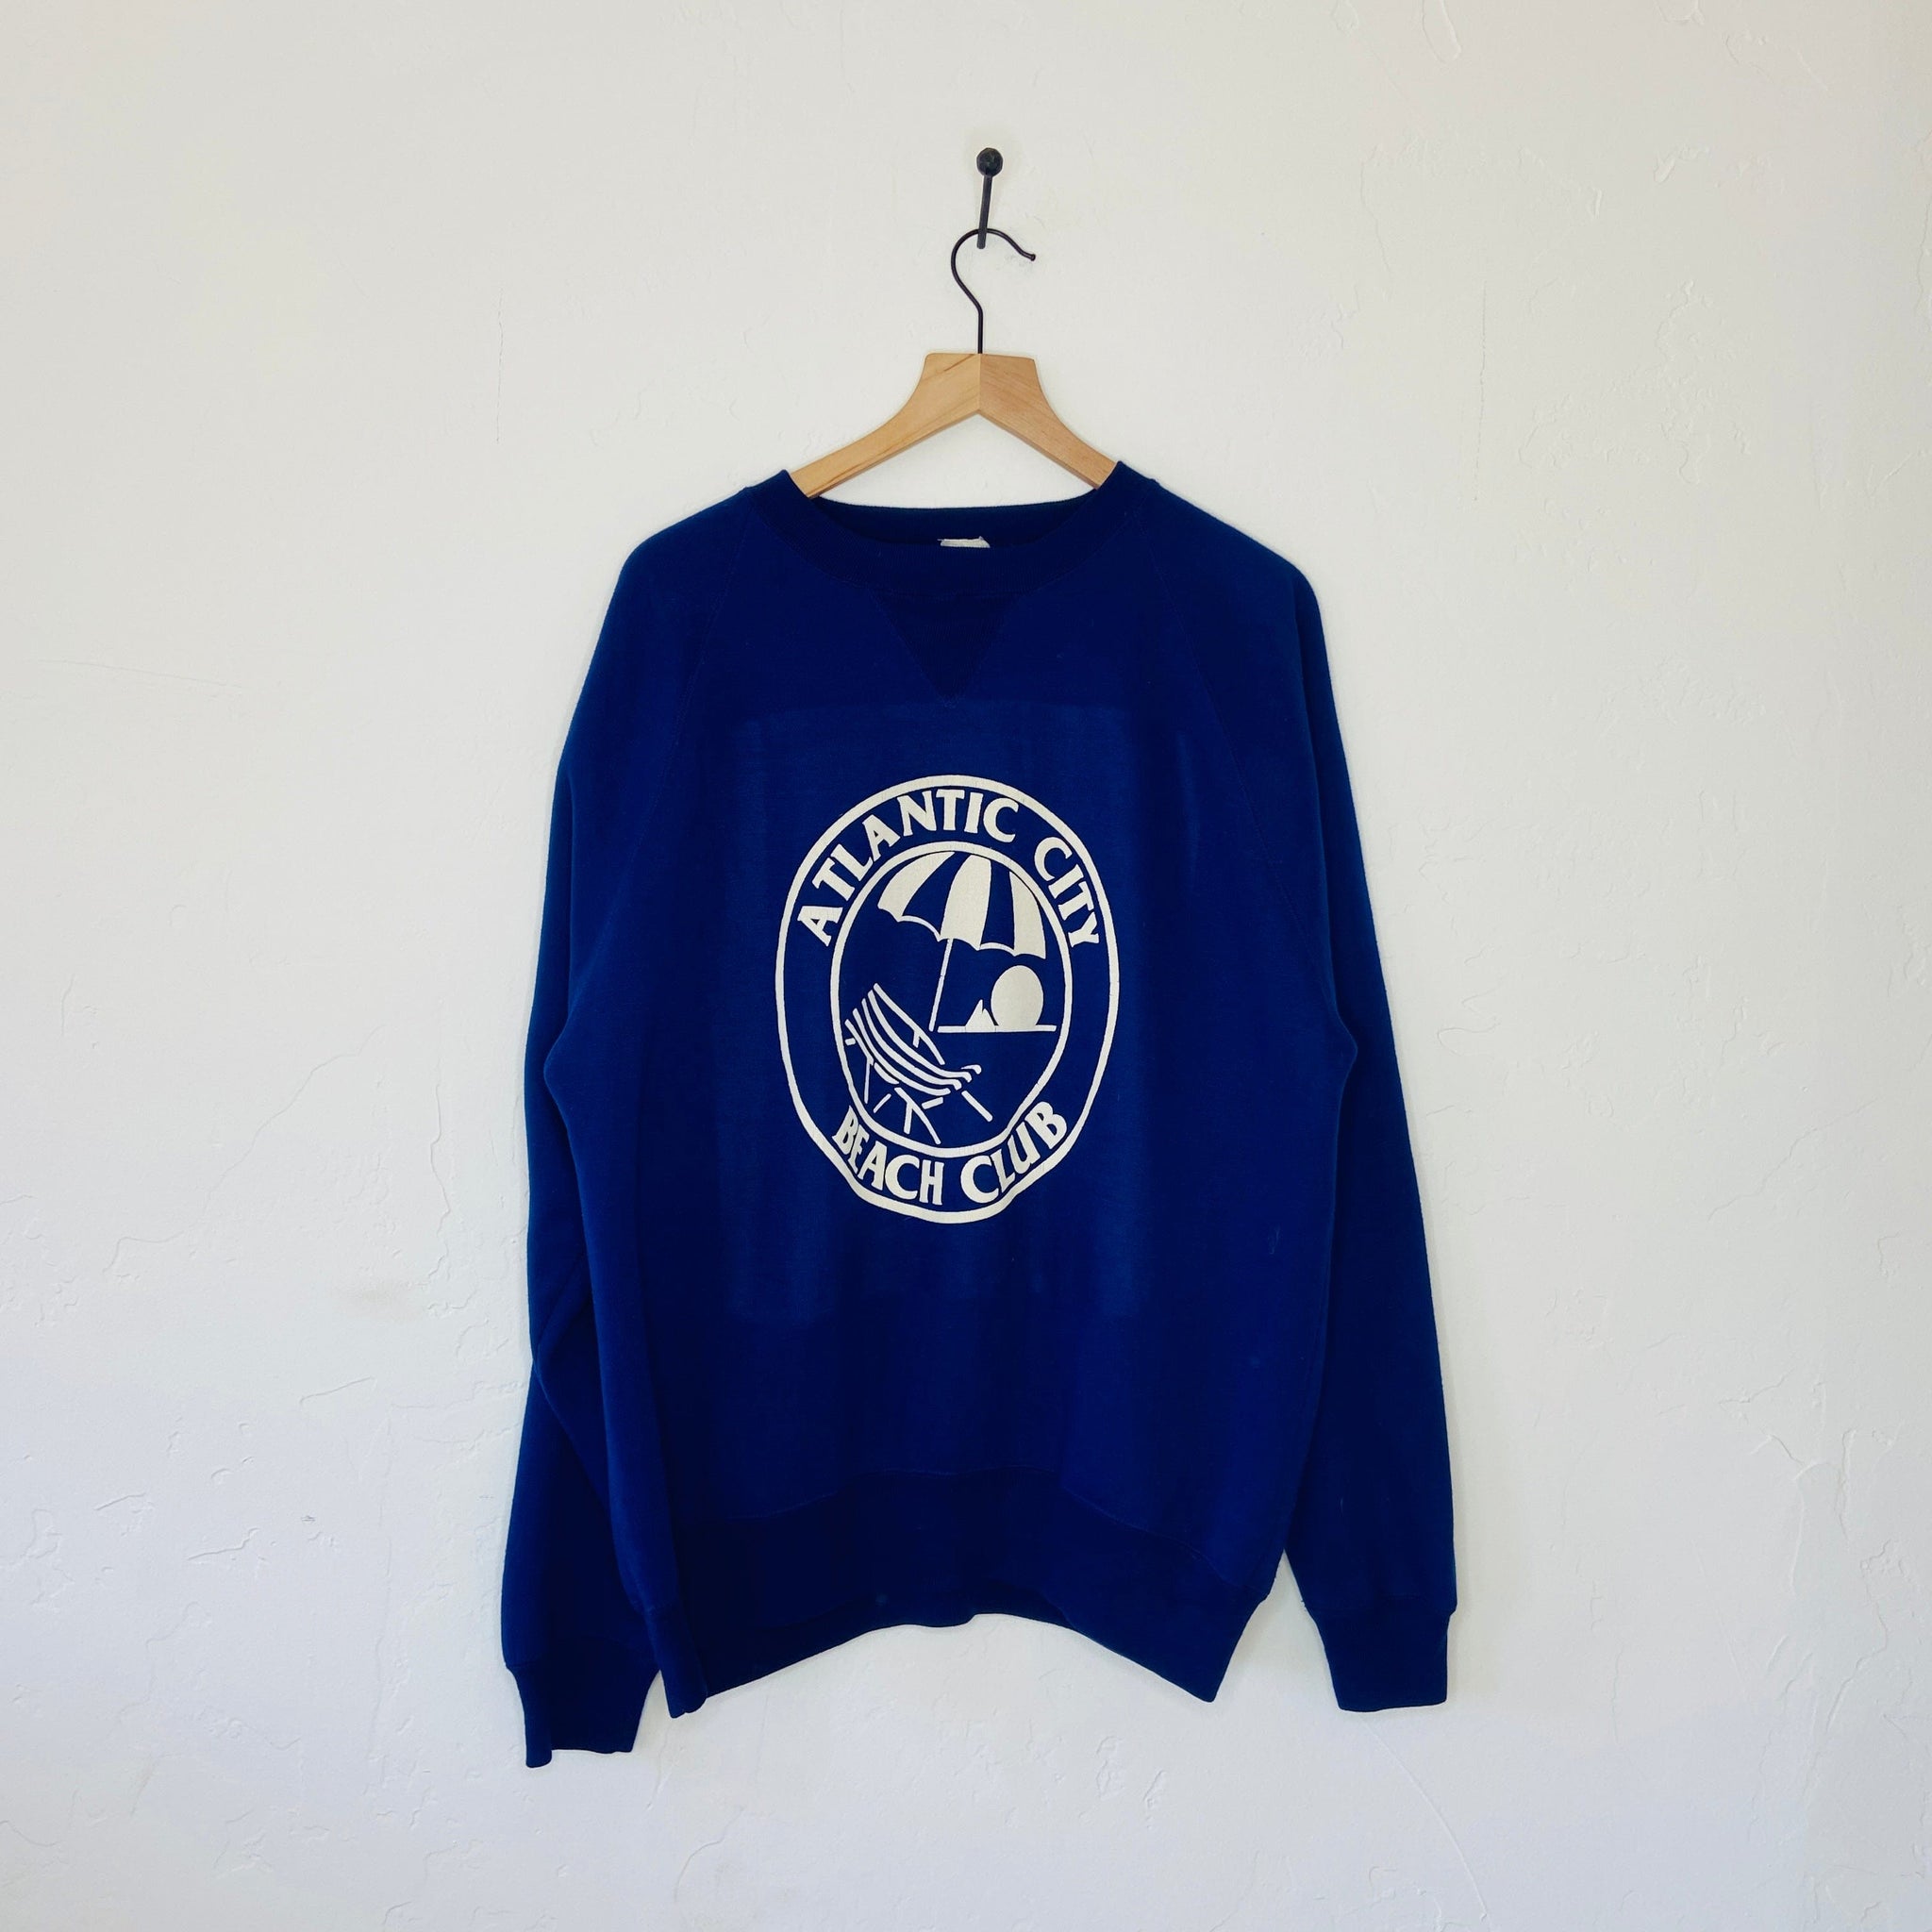 Benbrook Farms Apparel & Accessories Vintage Sweatshirts